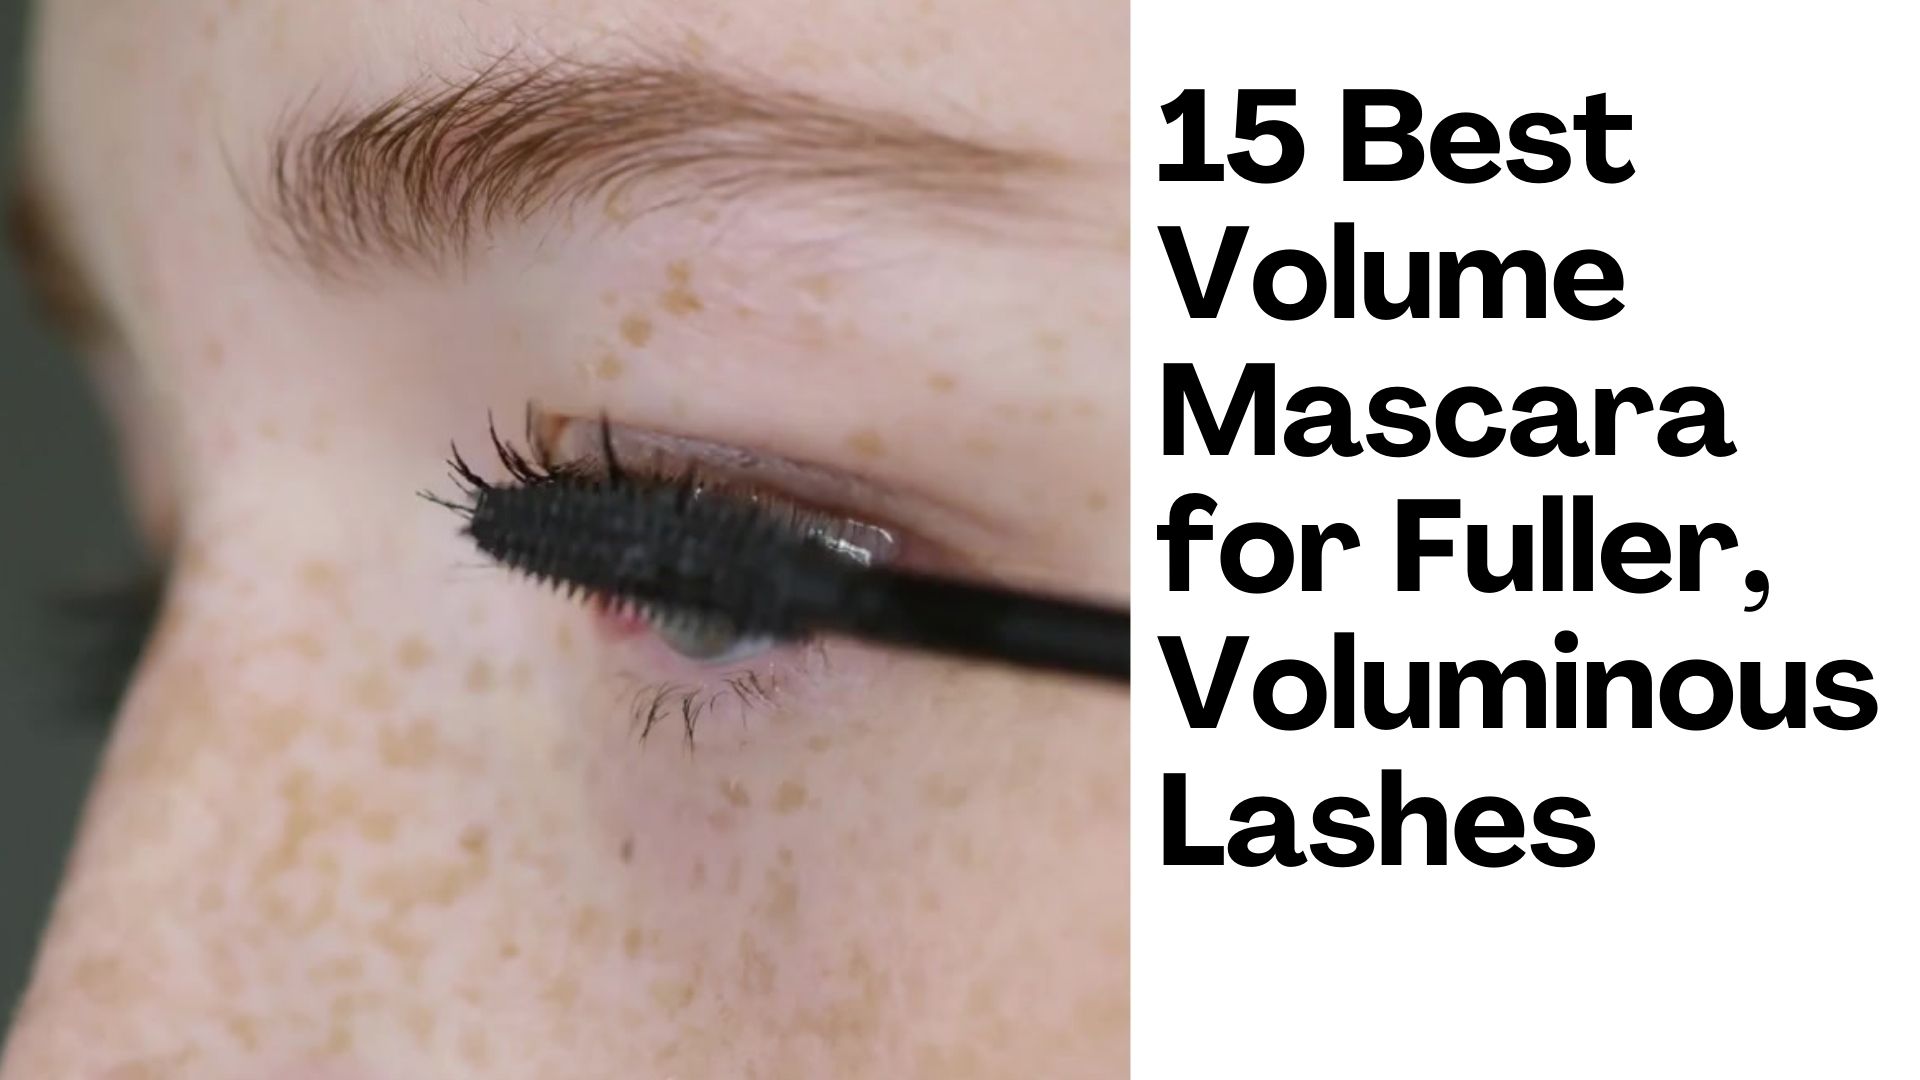 15 Best Volume Mascara for Fuller, Voluminous Lashes